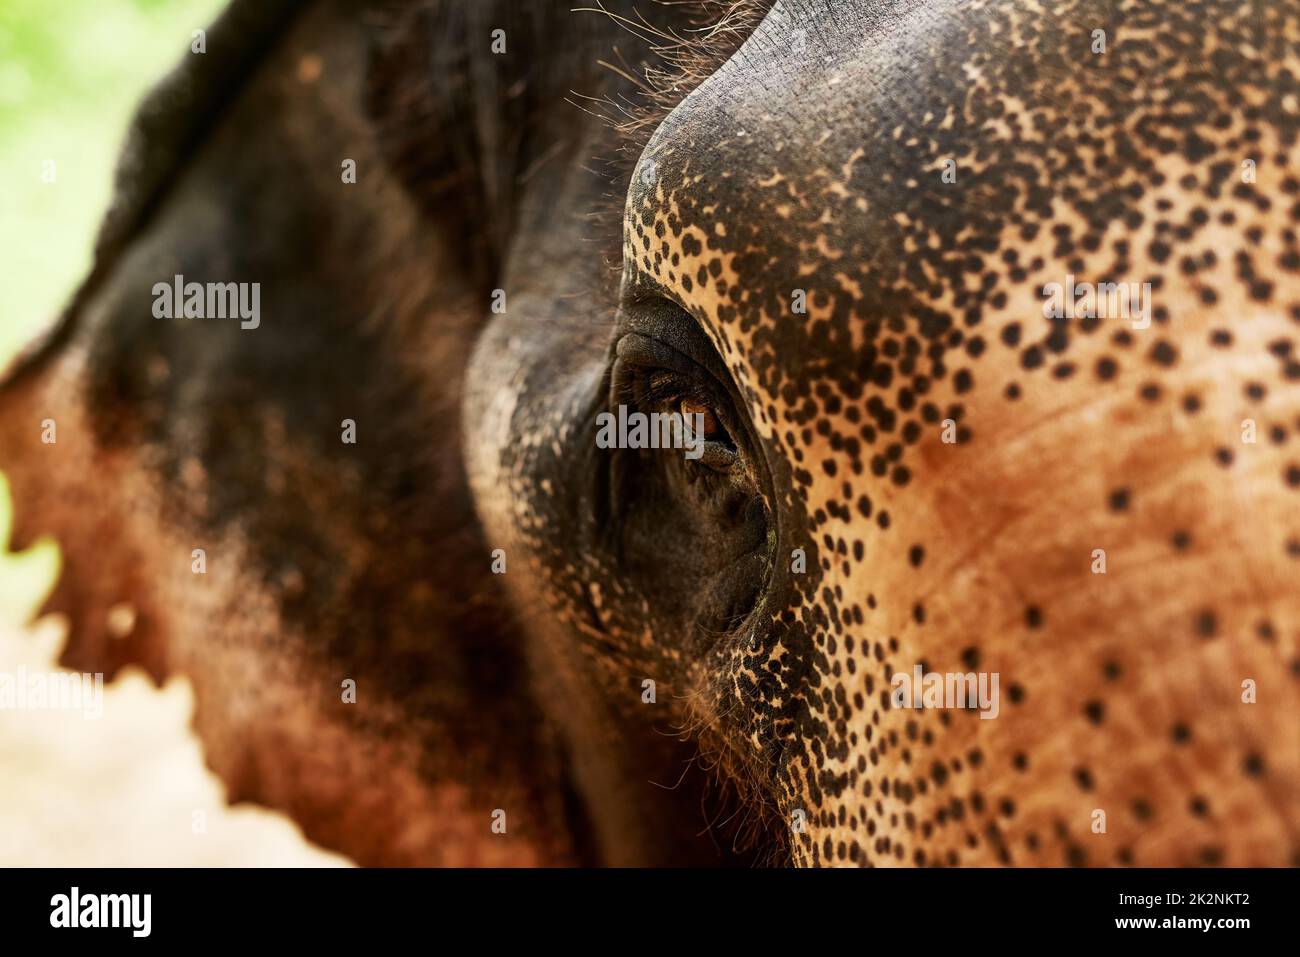 Die Wunder der Tierwelt. Nahaufnahme eines asiatischen Elefanten in seinem natürlichen Lebensraum. Stockfoto